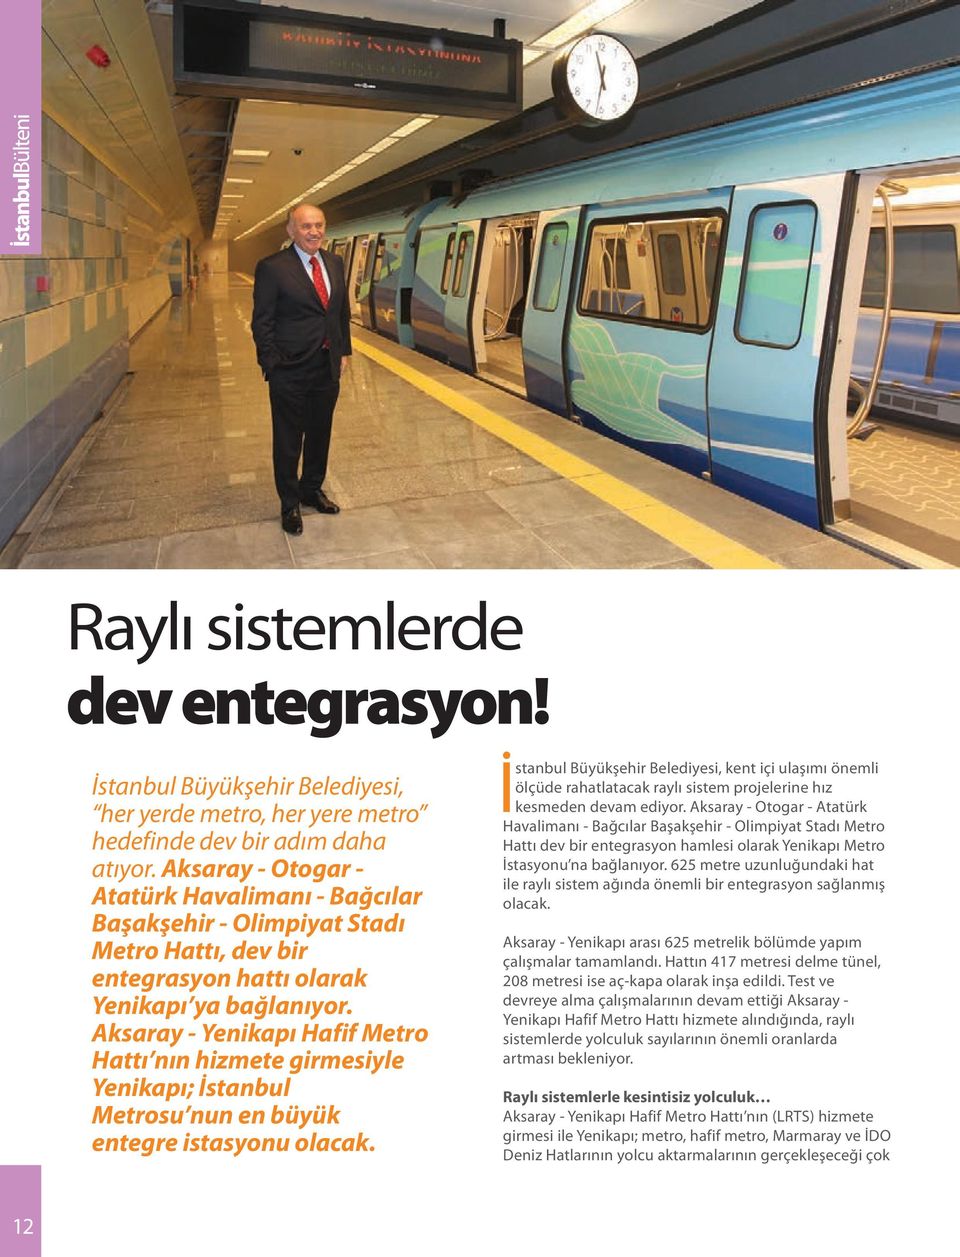 Aksaray - Yenikapı Hafif Metro Hattı nın hizmete girmesiyle Yenikapı; İstanbul Metrosu nun en büyük entegre istasyonu olacak.